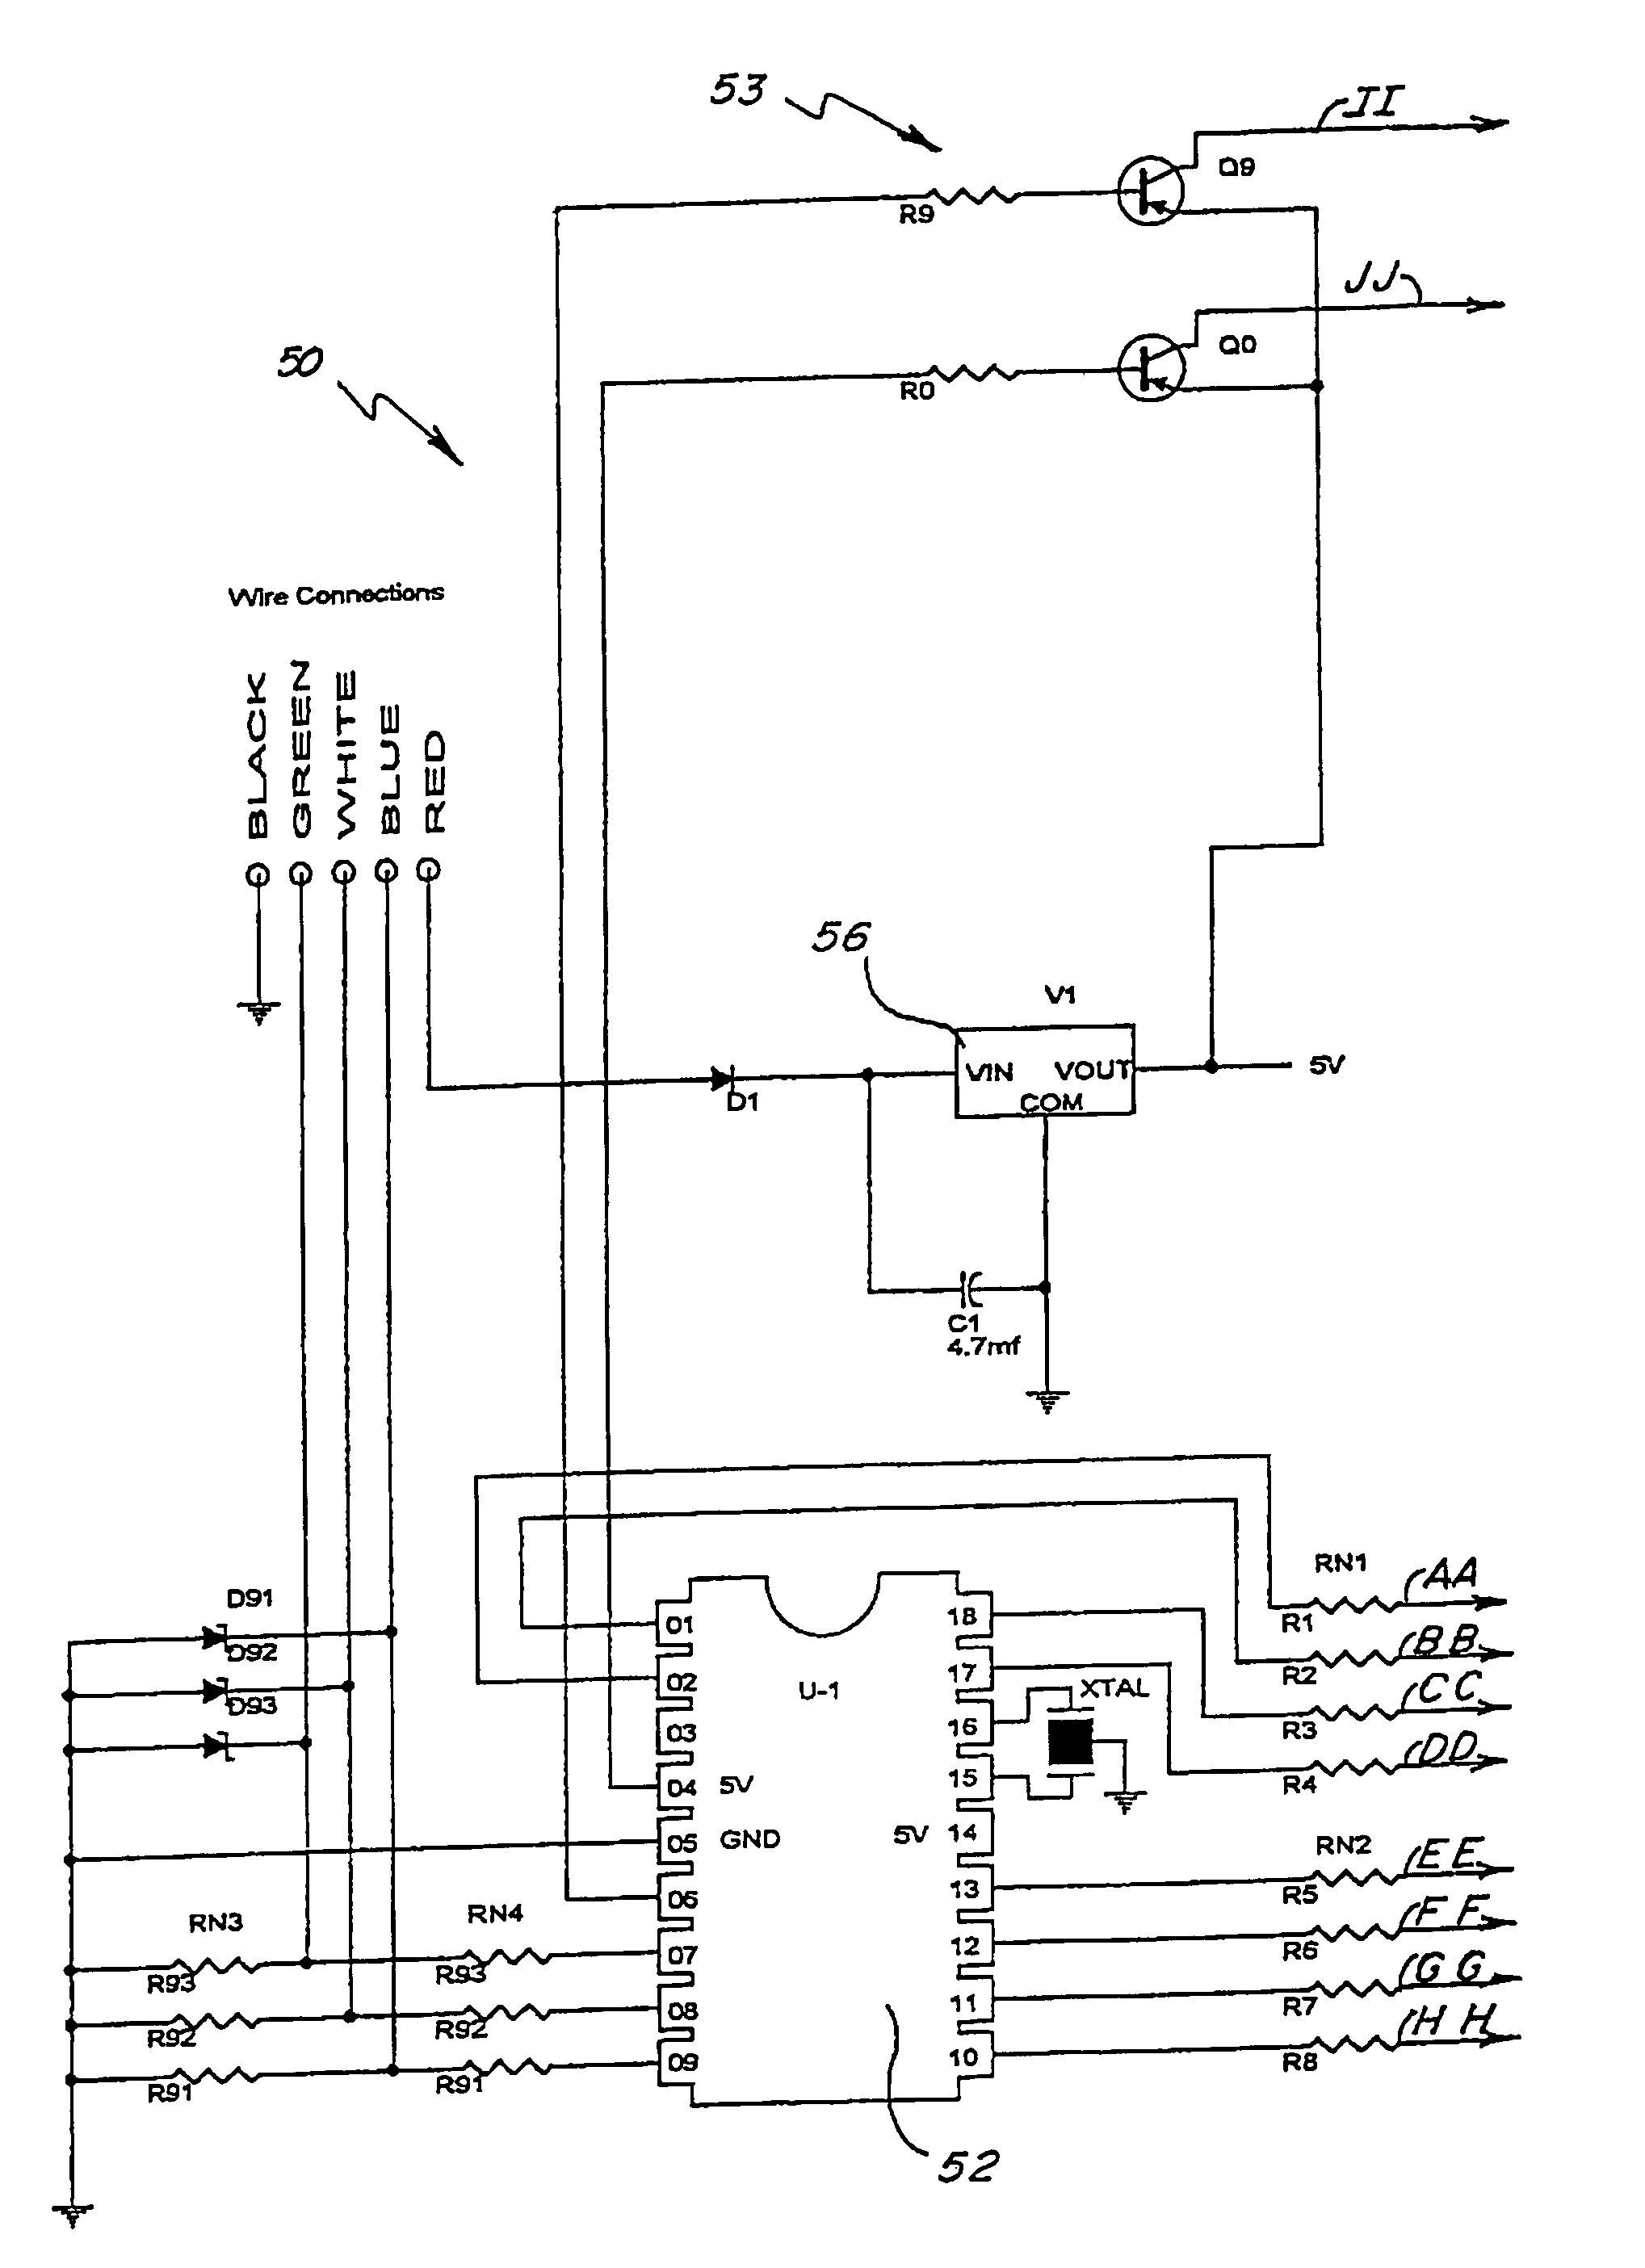 LED compensation circuit